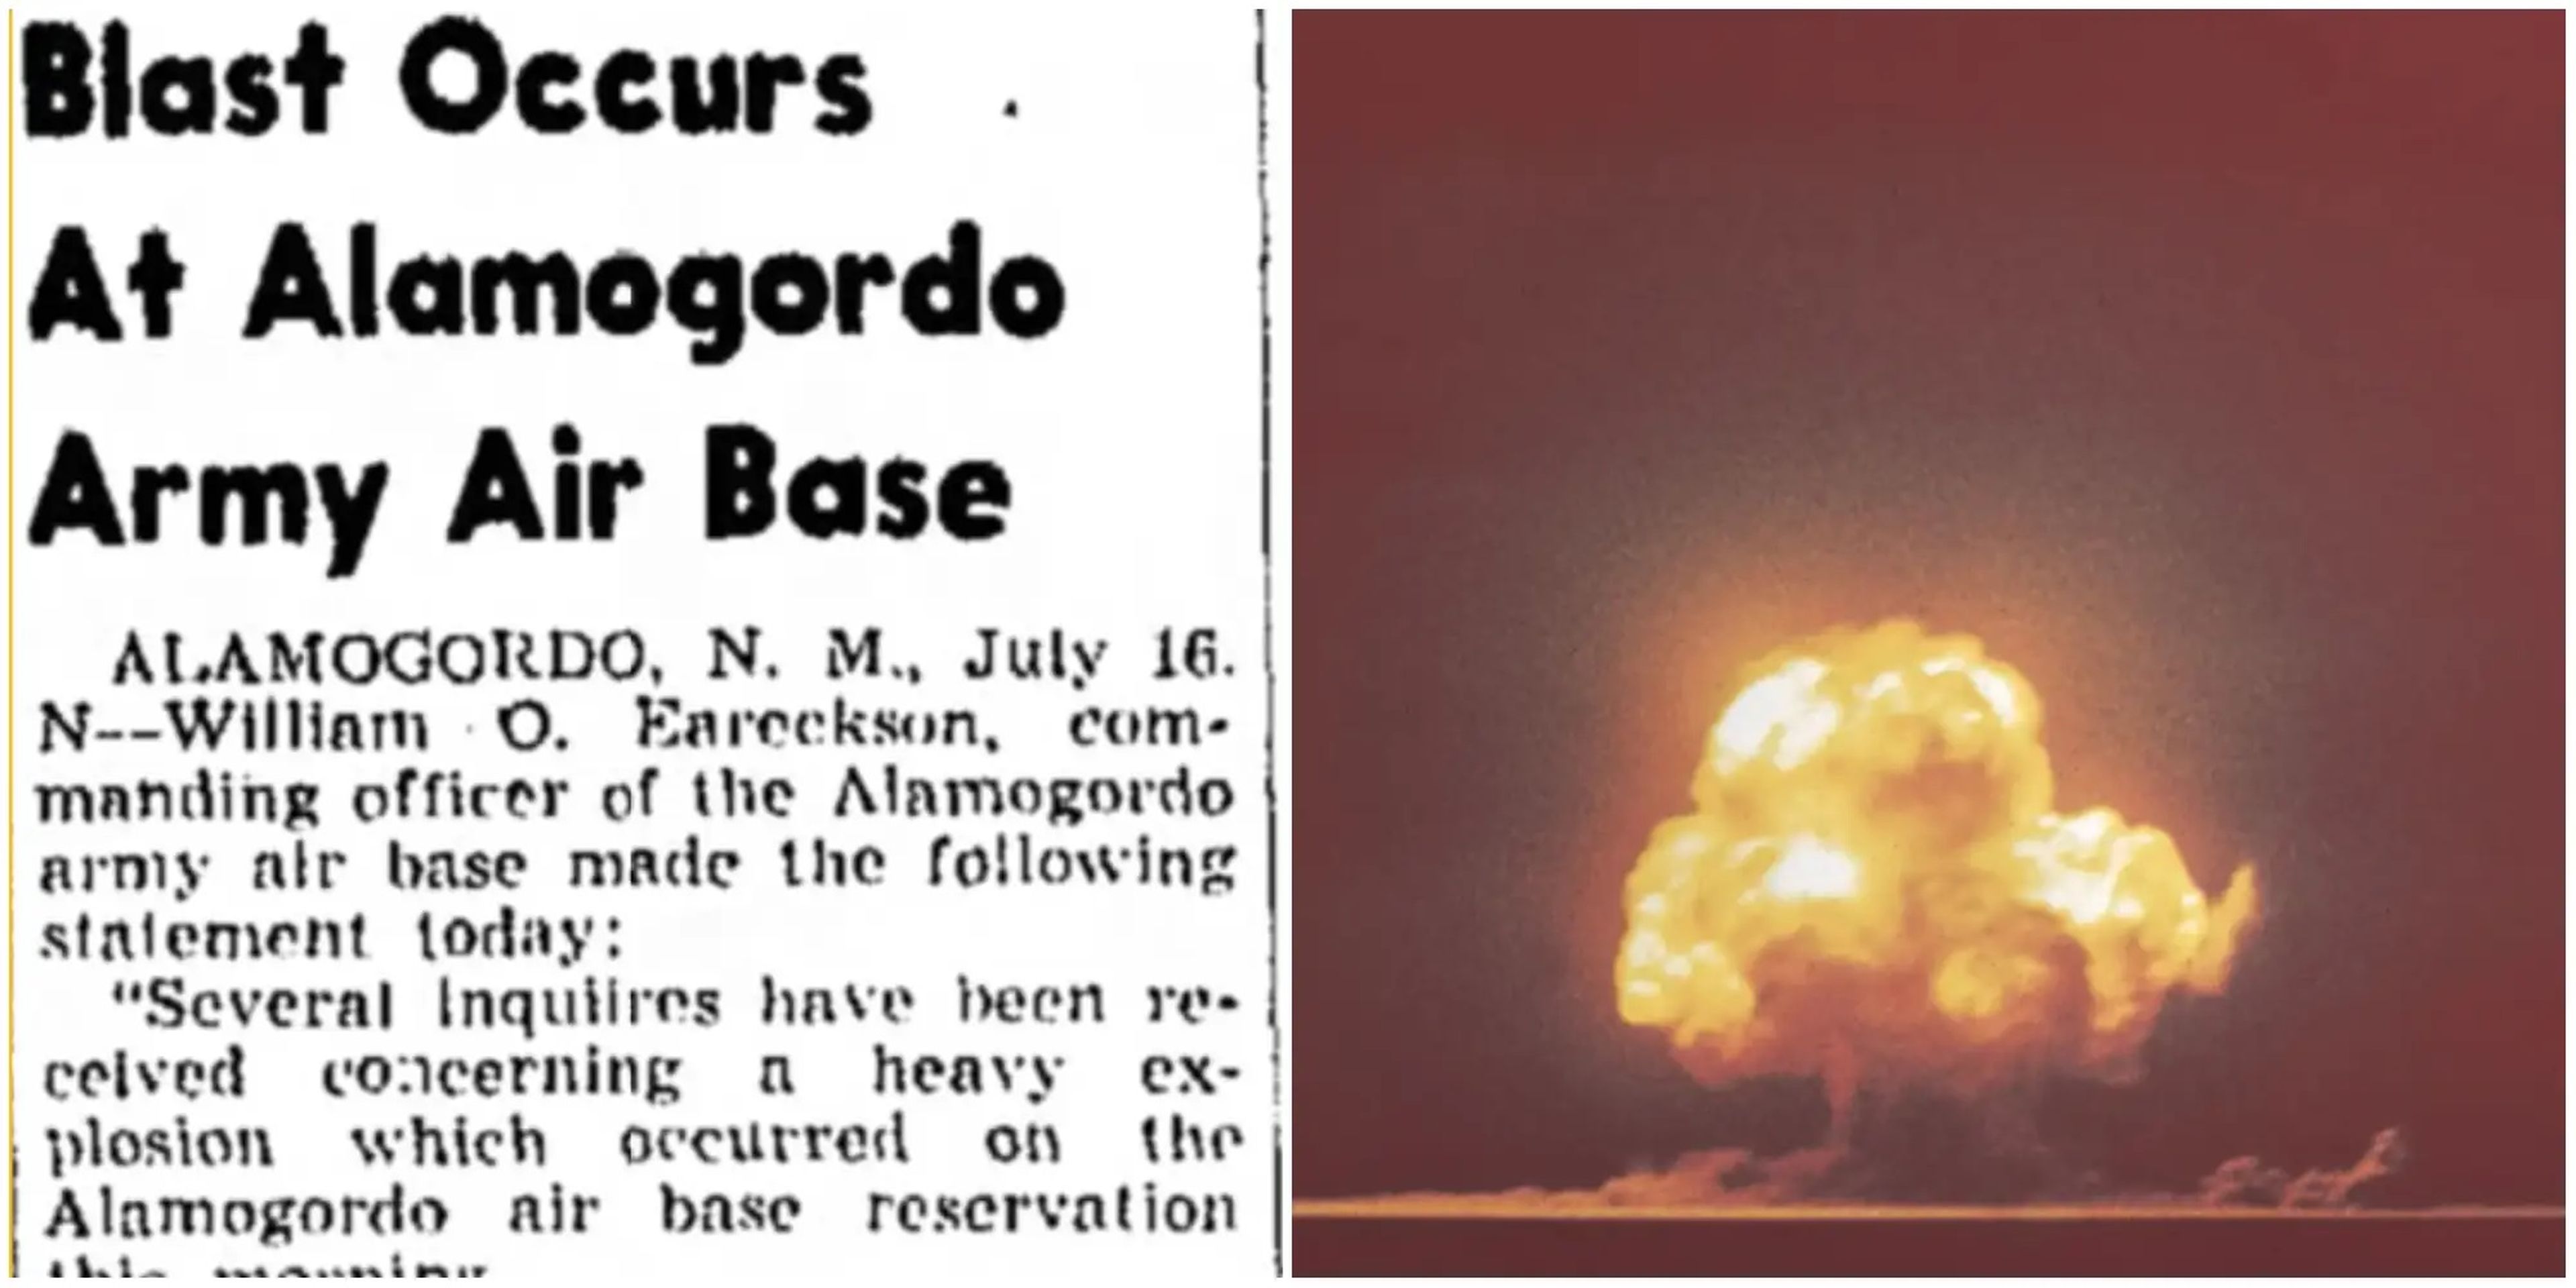 La enorme explosión de la prueba Trinity de Oppenheimer se explicó en un principio como una explosión de un depósito de municiones.